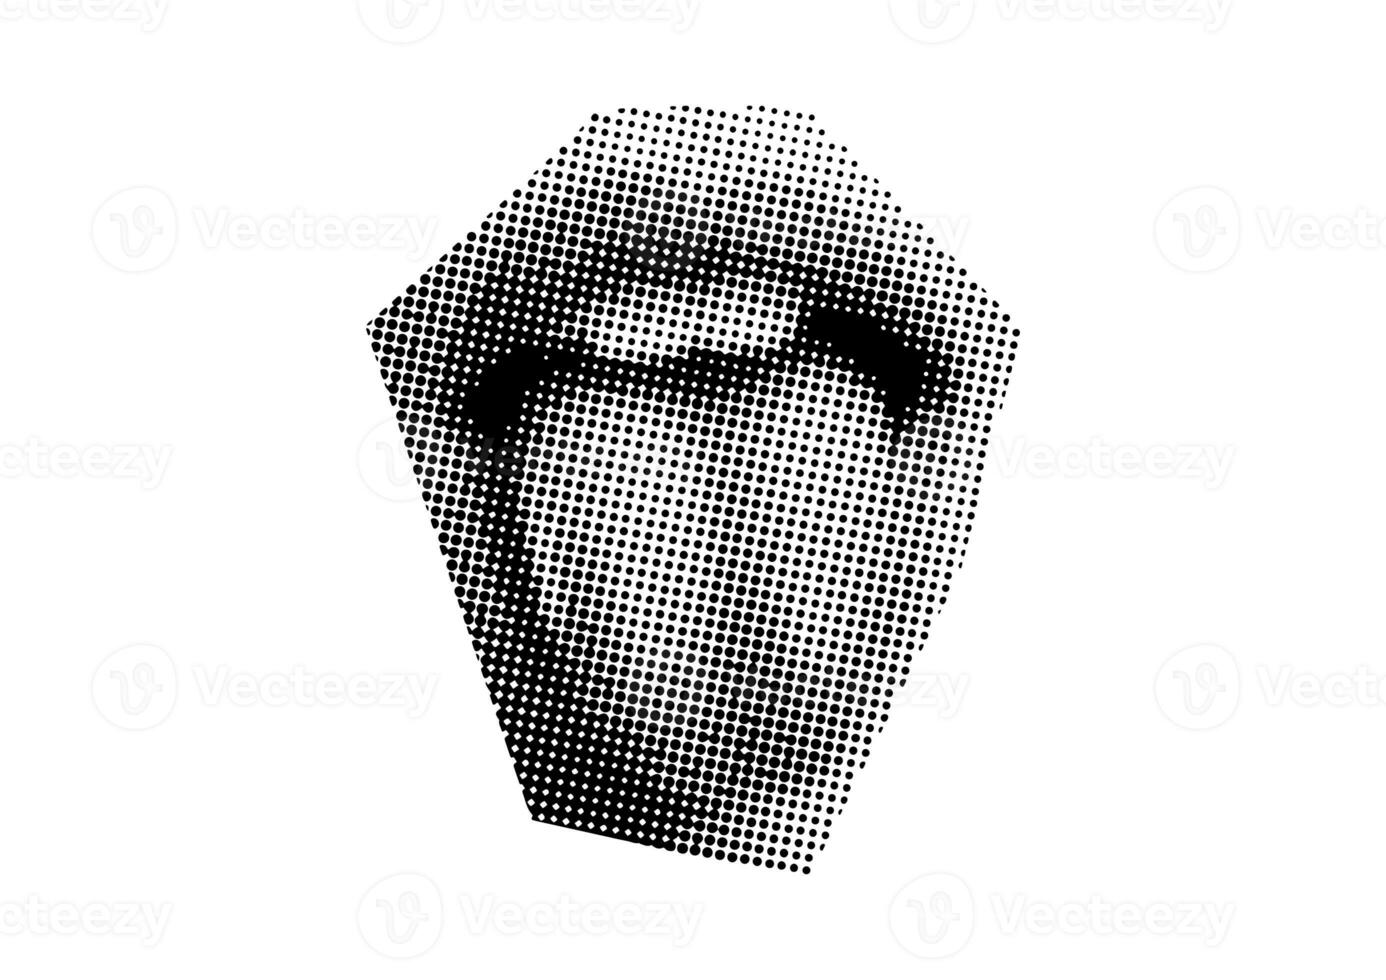 boca y labios, sonrisa, lengua, puntos punk y2k negro y blanco collage elementos foto